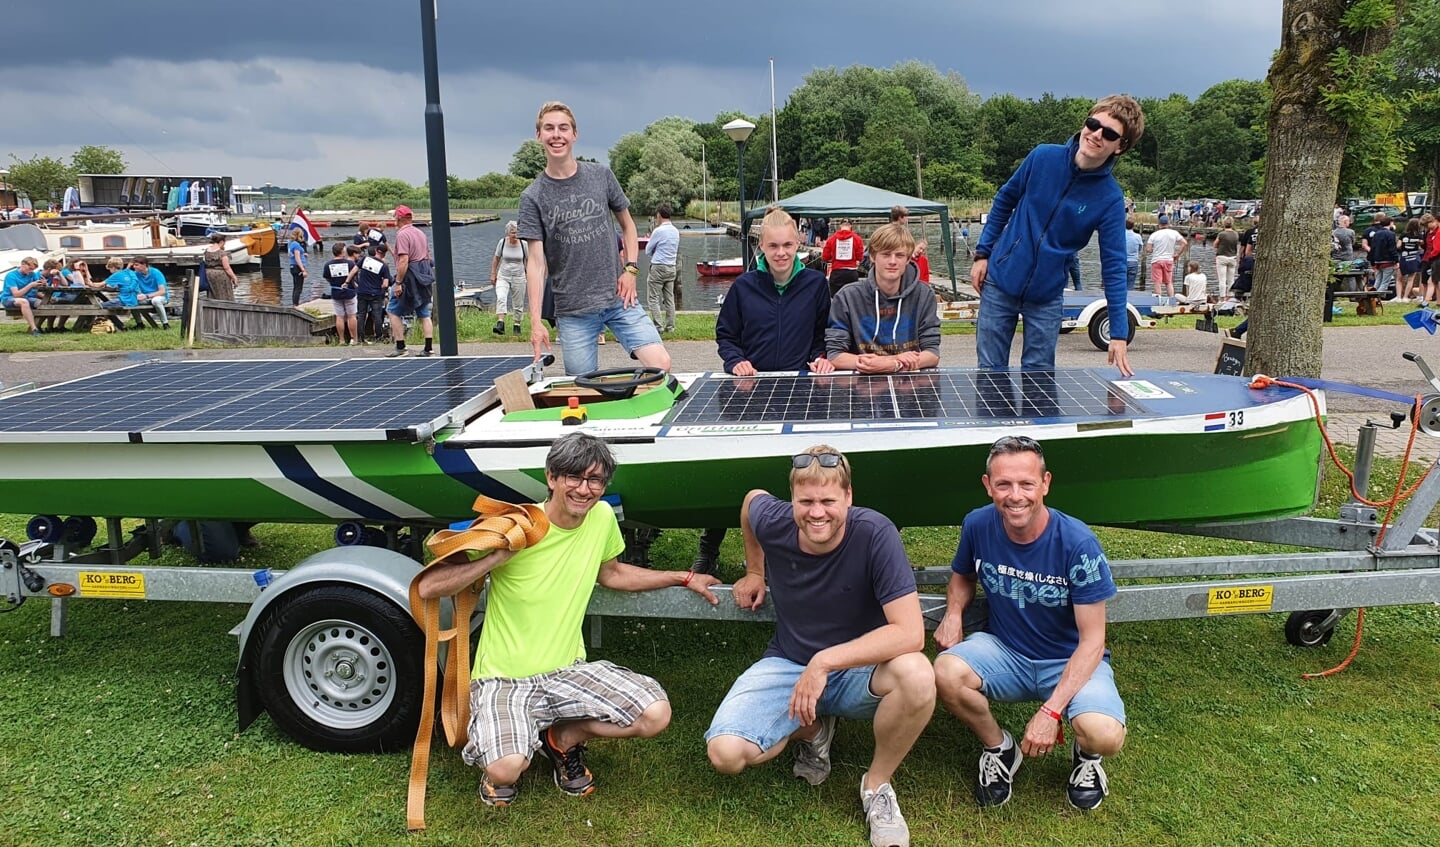 Het team De Griftvaarders afgelopen weekend tijdens de finale van de Young Solar Challenge.